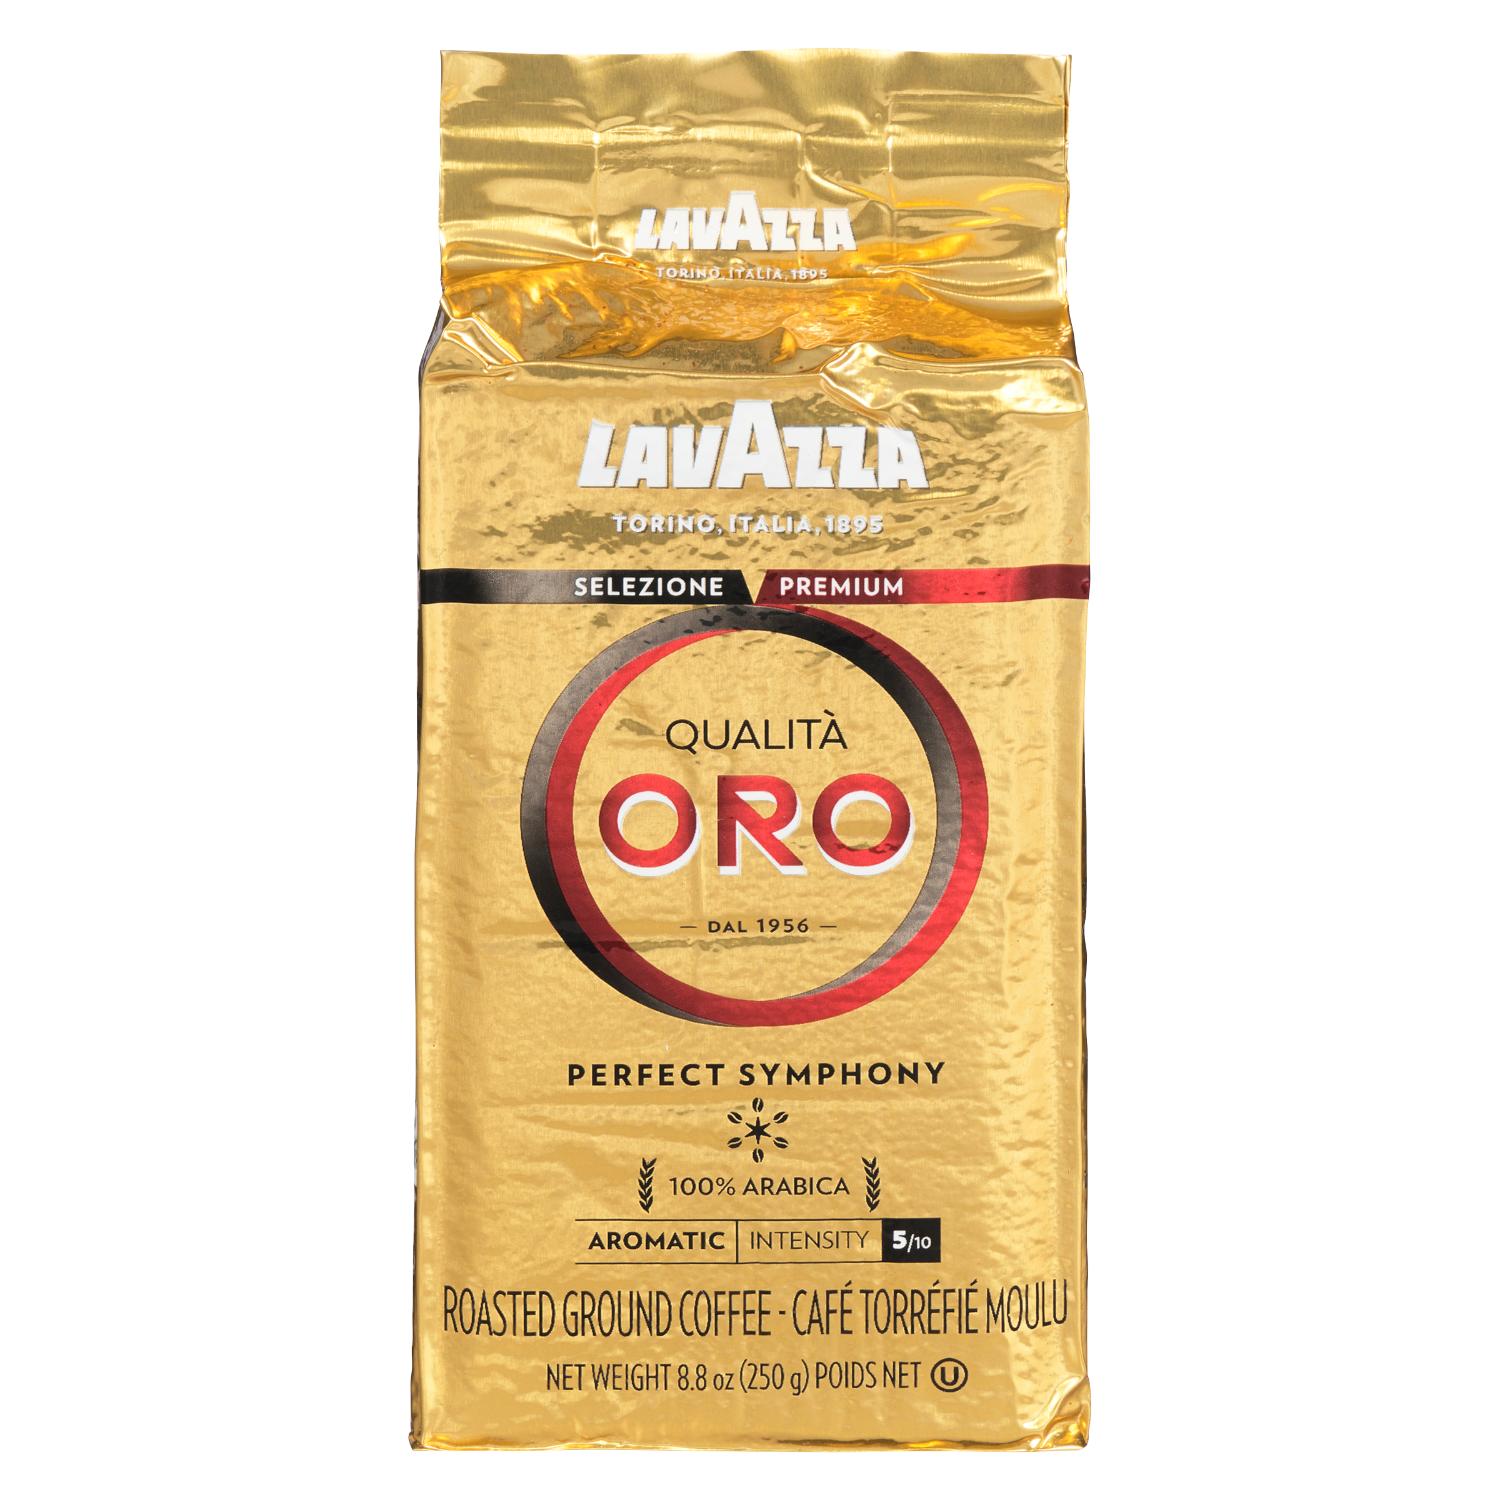 250g Lavazza Qualita Oro café moulu filtre